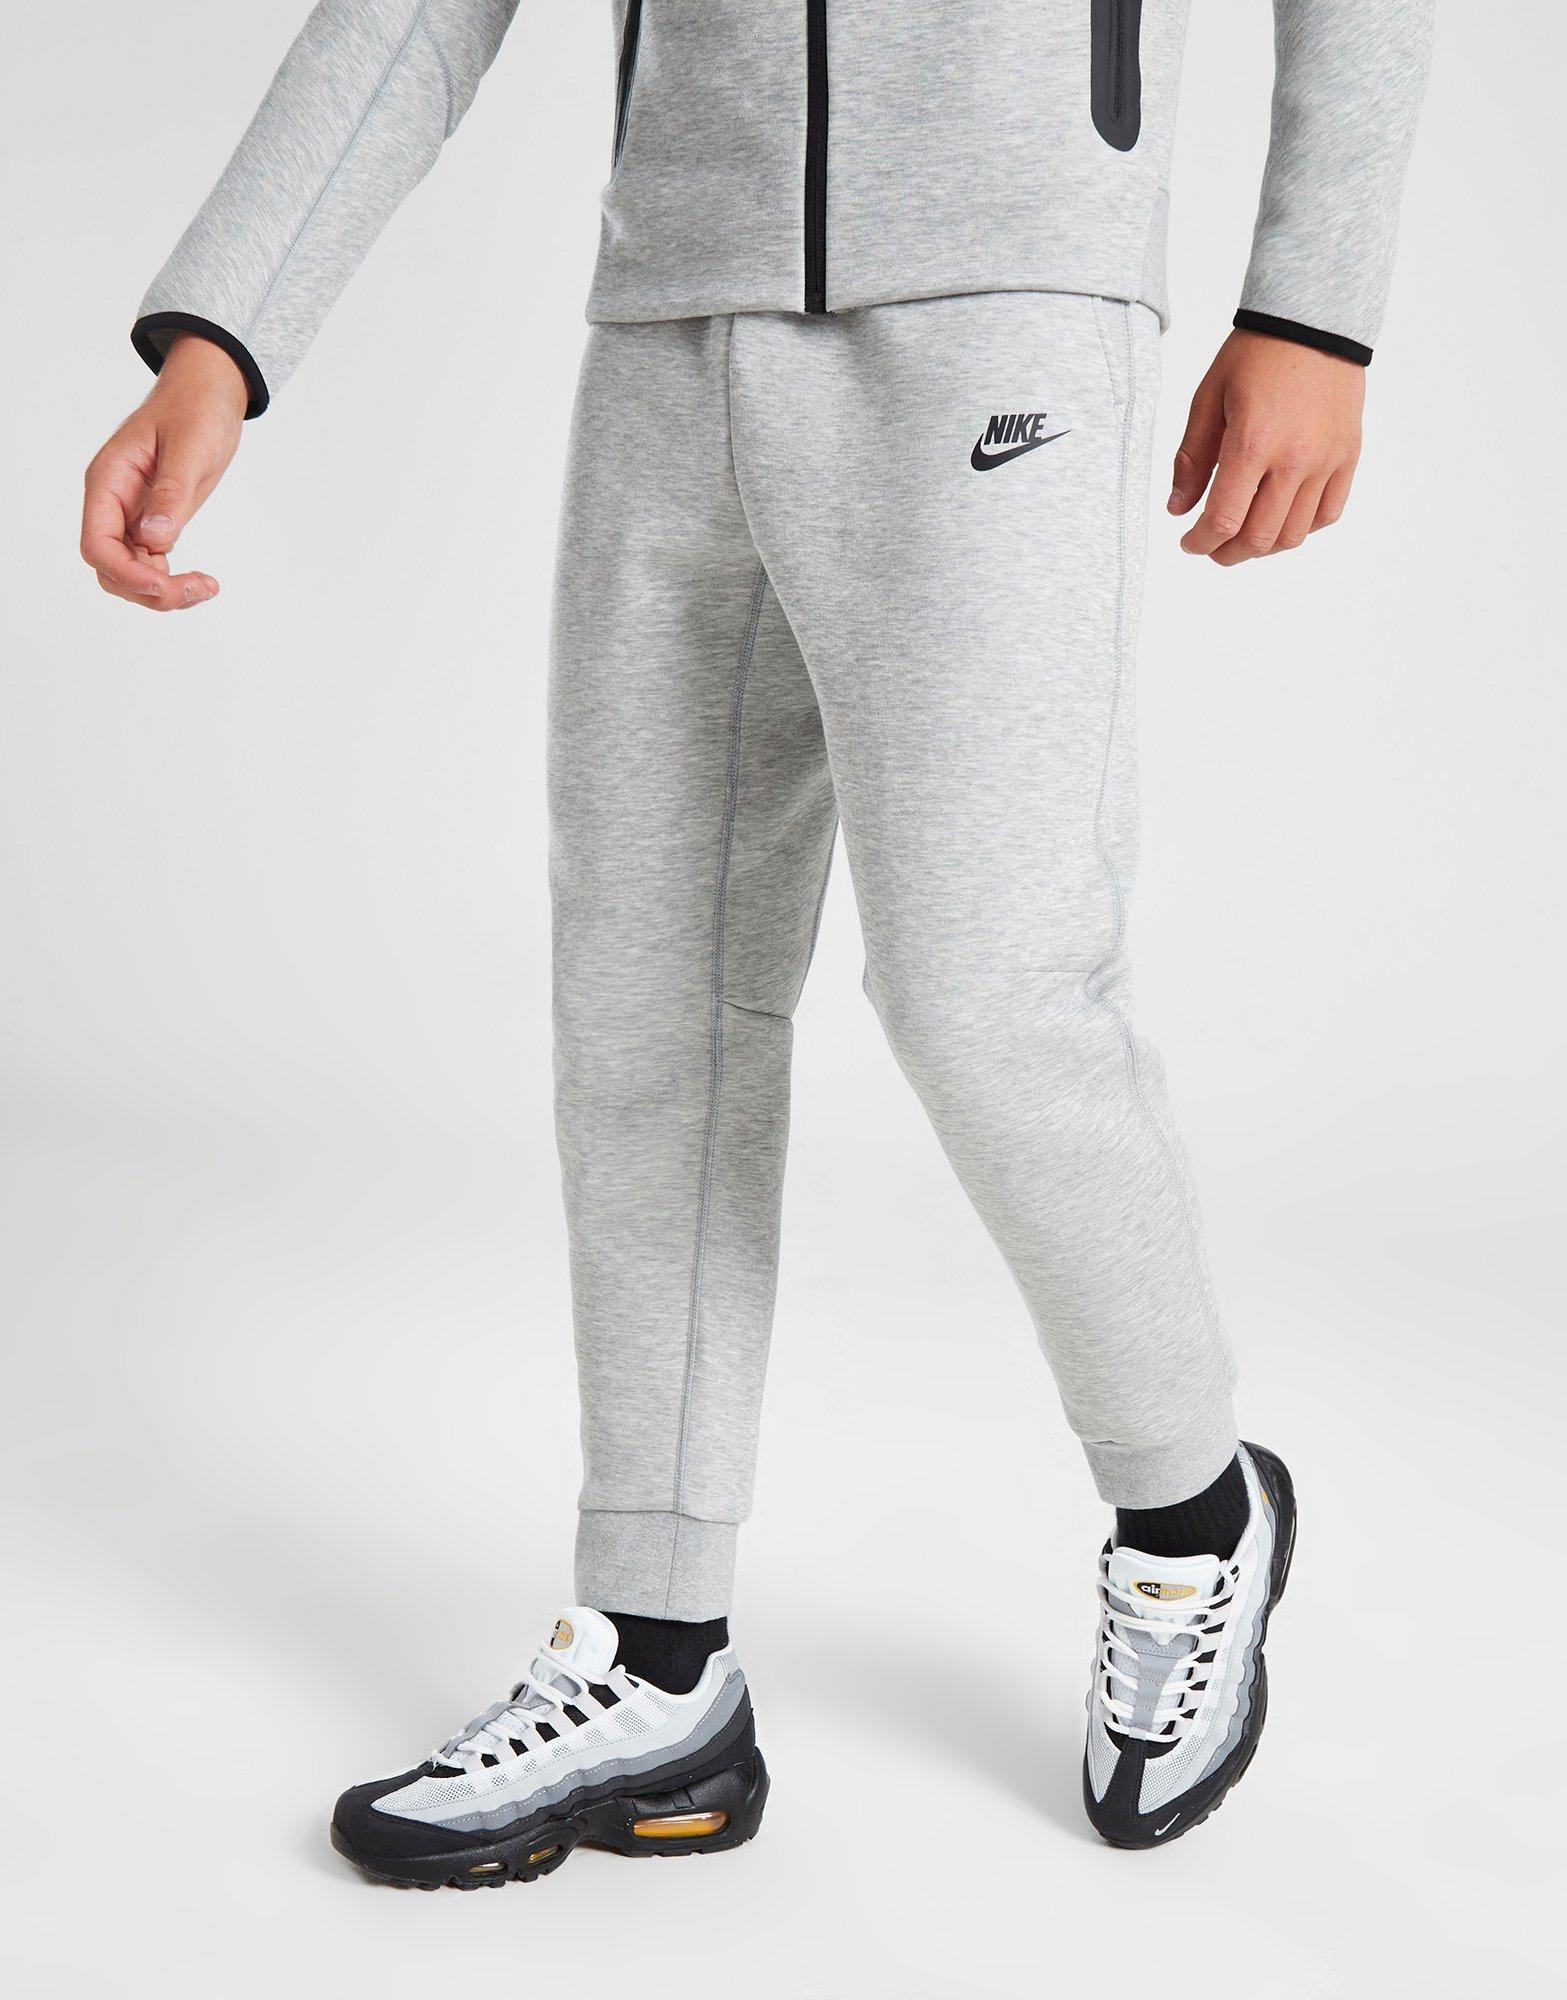 Nike Tech Fleece Bottoms - Black / Grey / White (New Season)